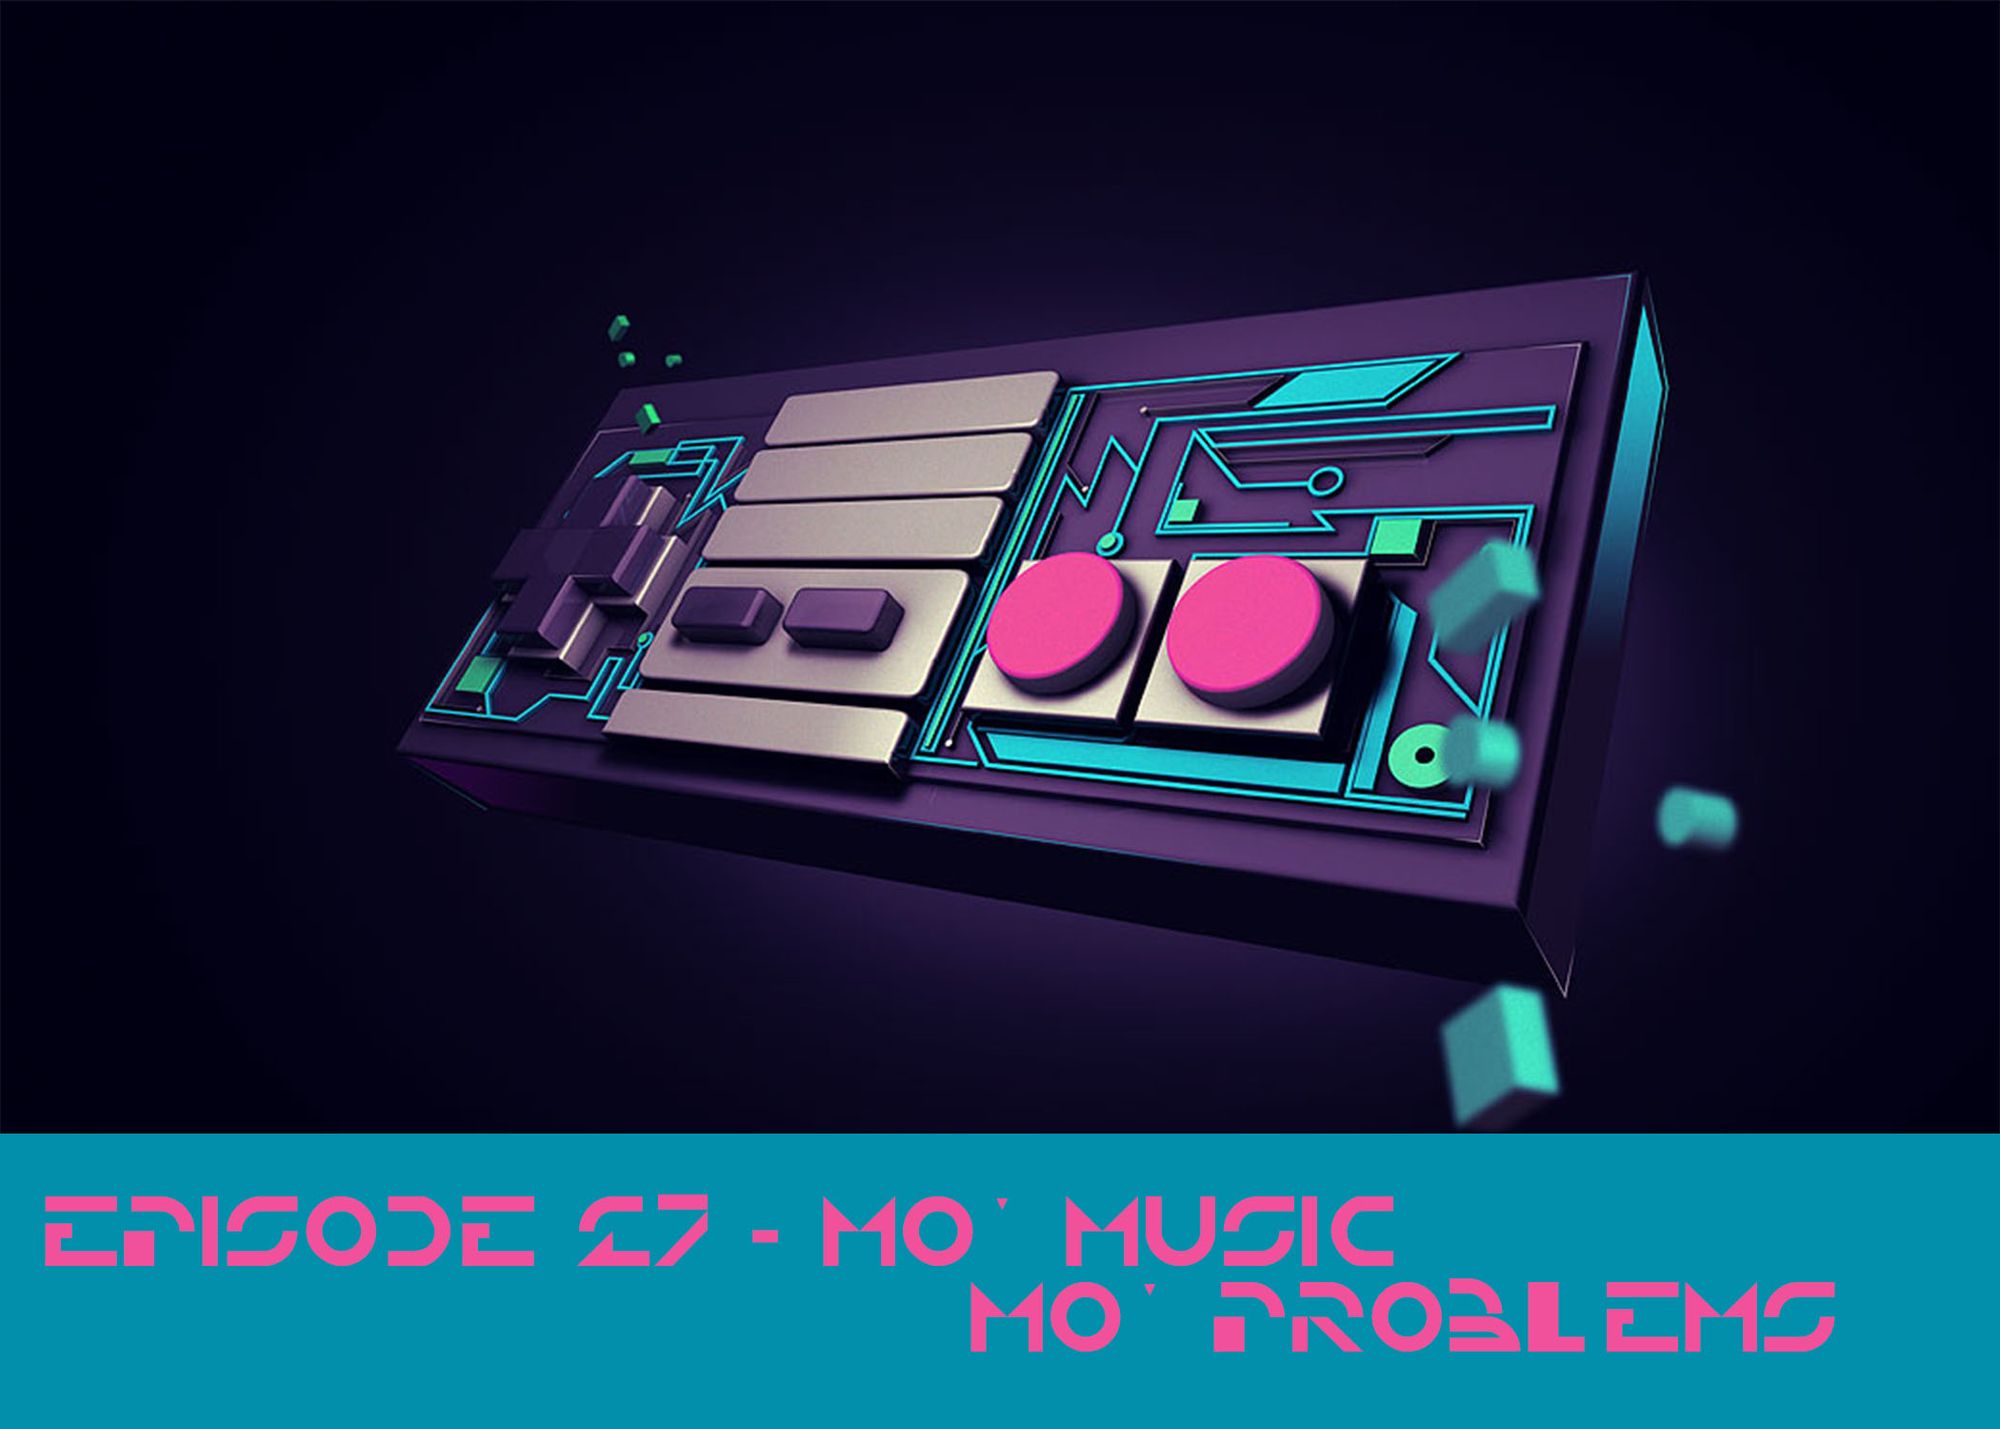 Episode 27 - Mo Music, Mo Problems